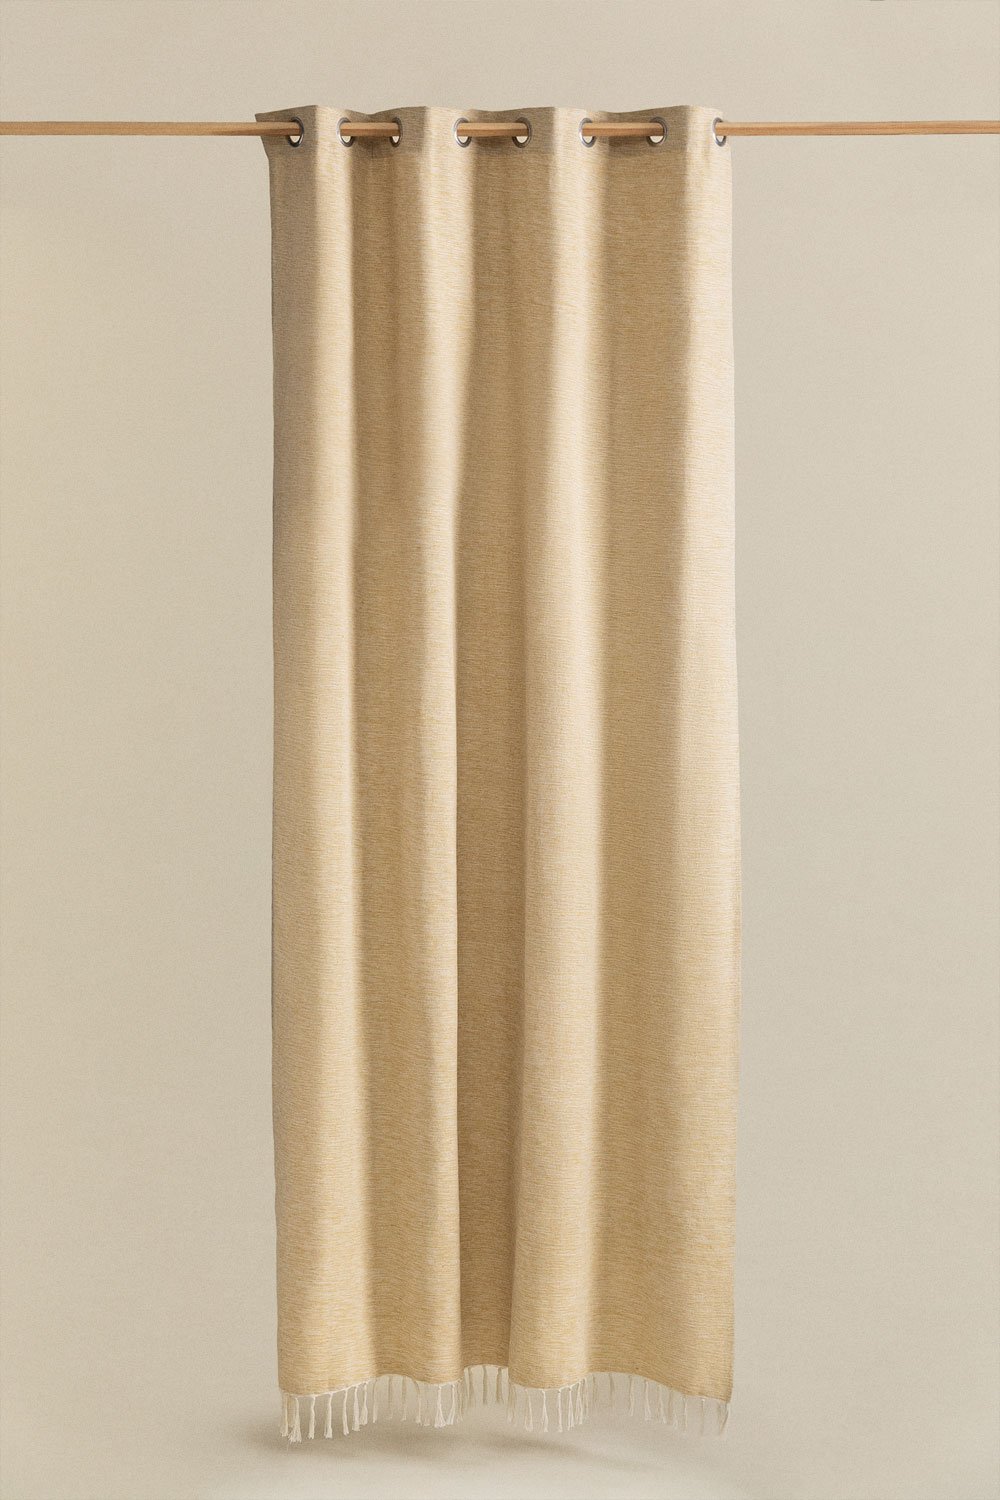 Katoenen gordijn (140x260 cm) Manami, galerij beeld 1